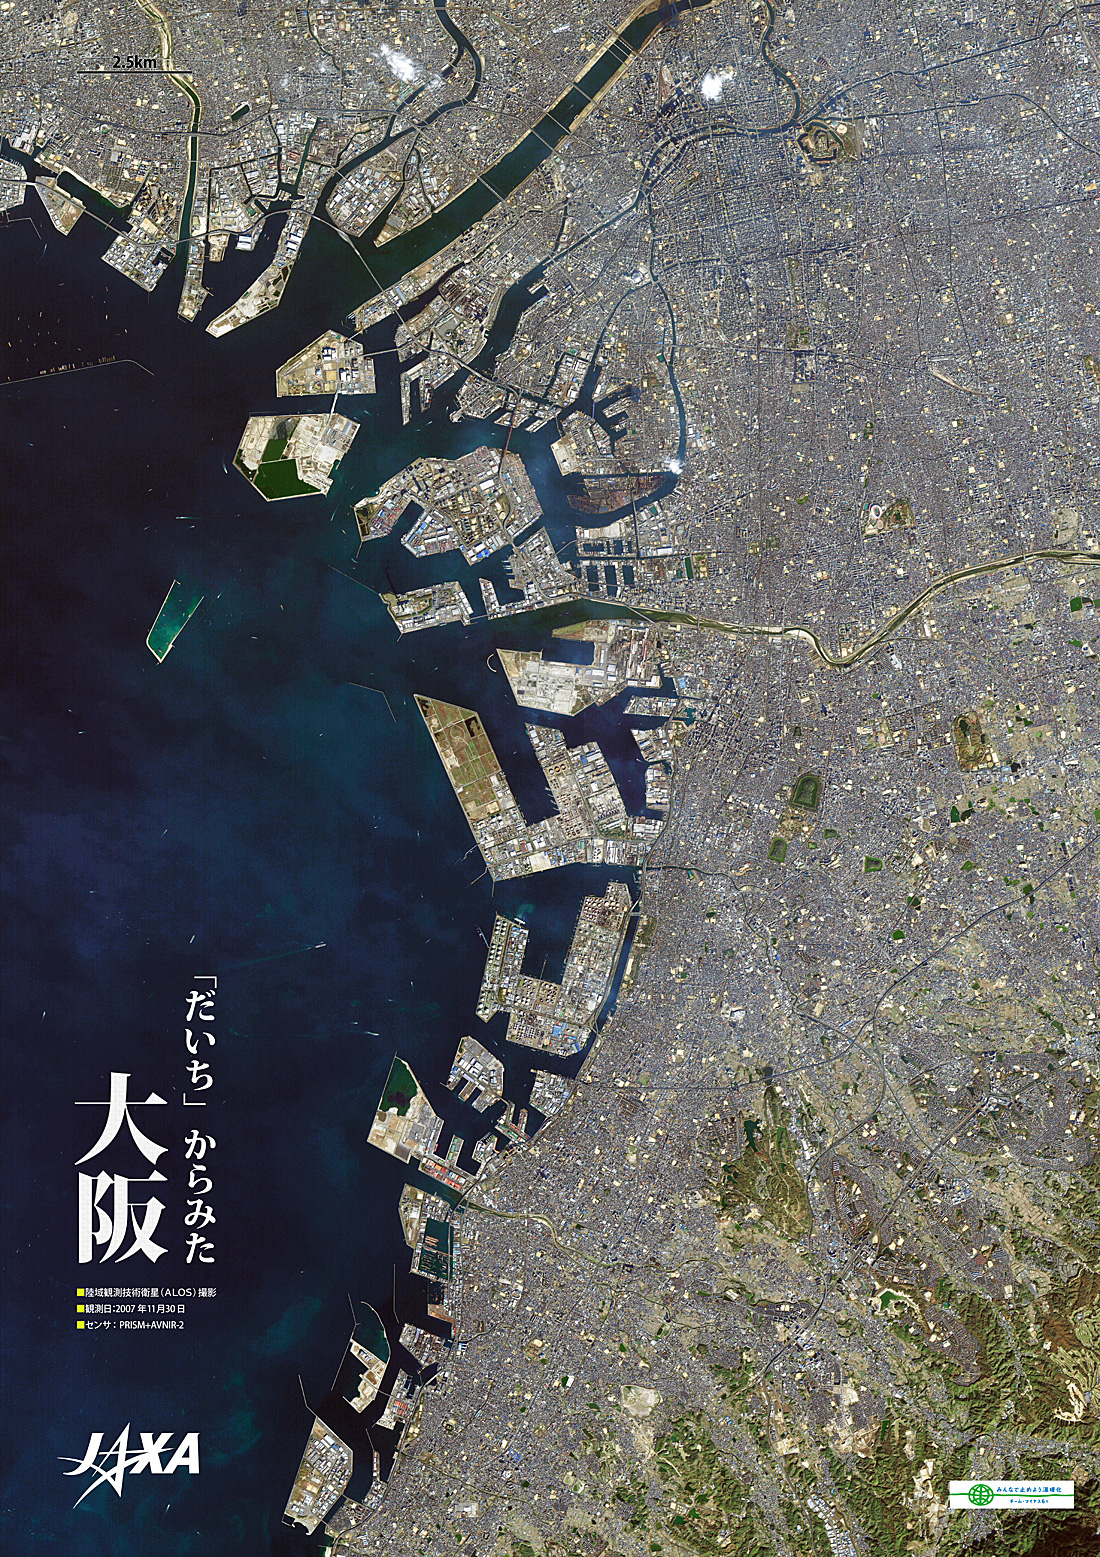 だいちから見た日本の都市 大阪:衛星画像（ポスター仕上げ）